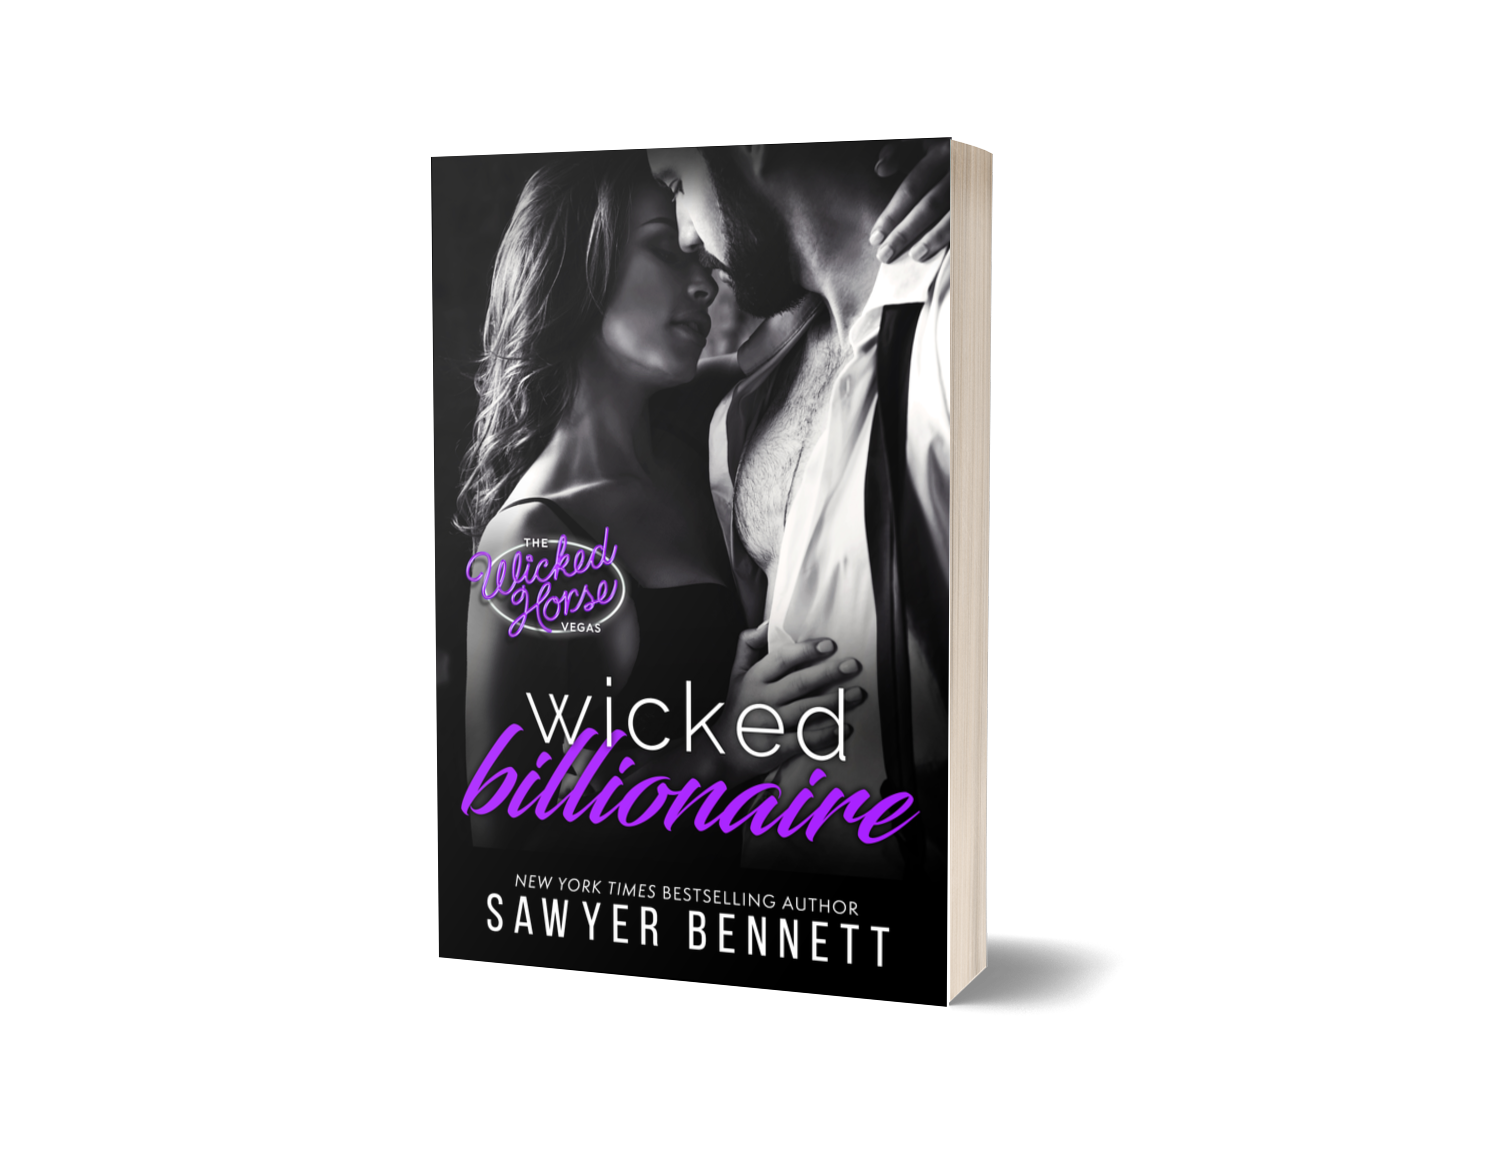 Wicked Billionaire - Sawyer Bennett